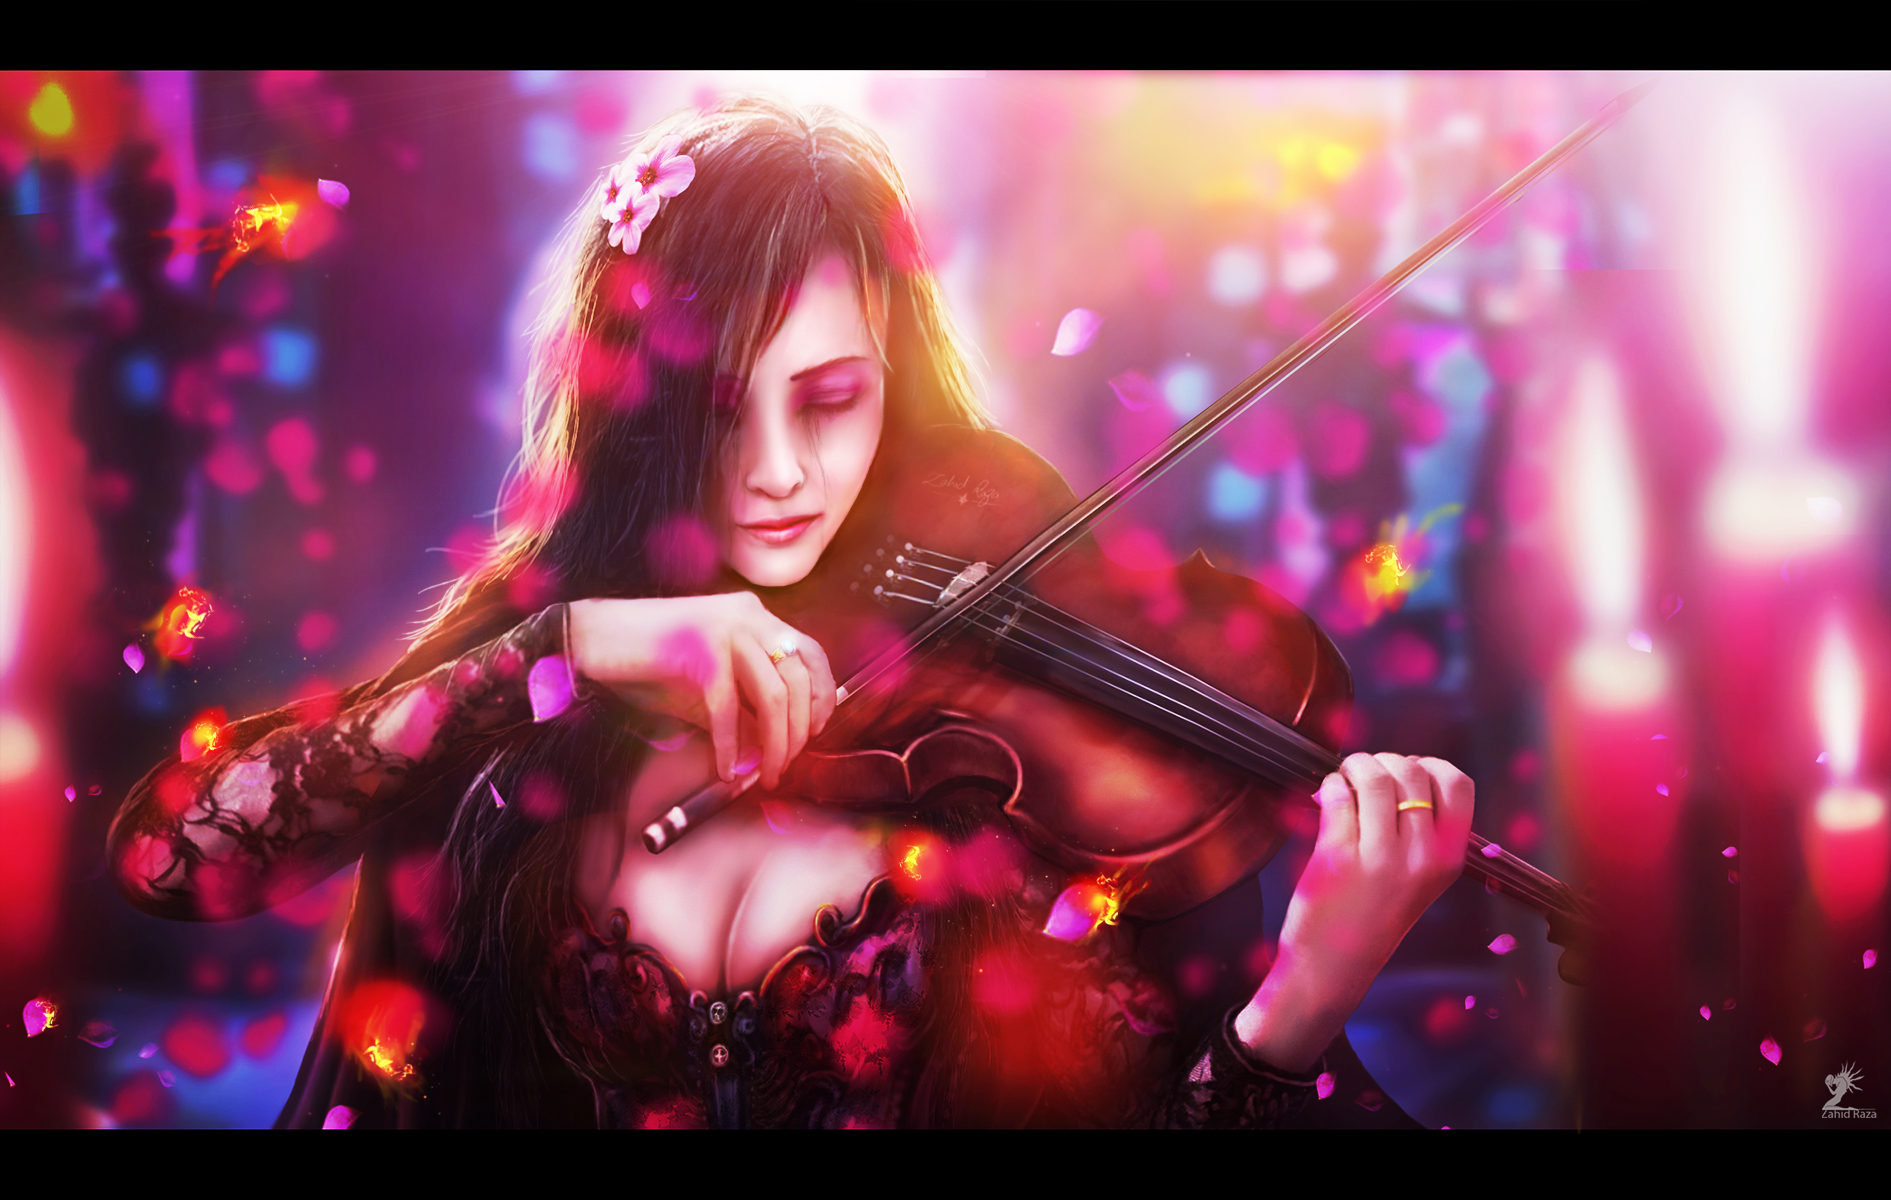 Музыка для души популярные. Музыкант скрипач арт фэнтези. Девушки со скрипкой. Девушка со скрипкой арт. Девушка с музыкальным инструментом.